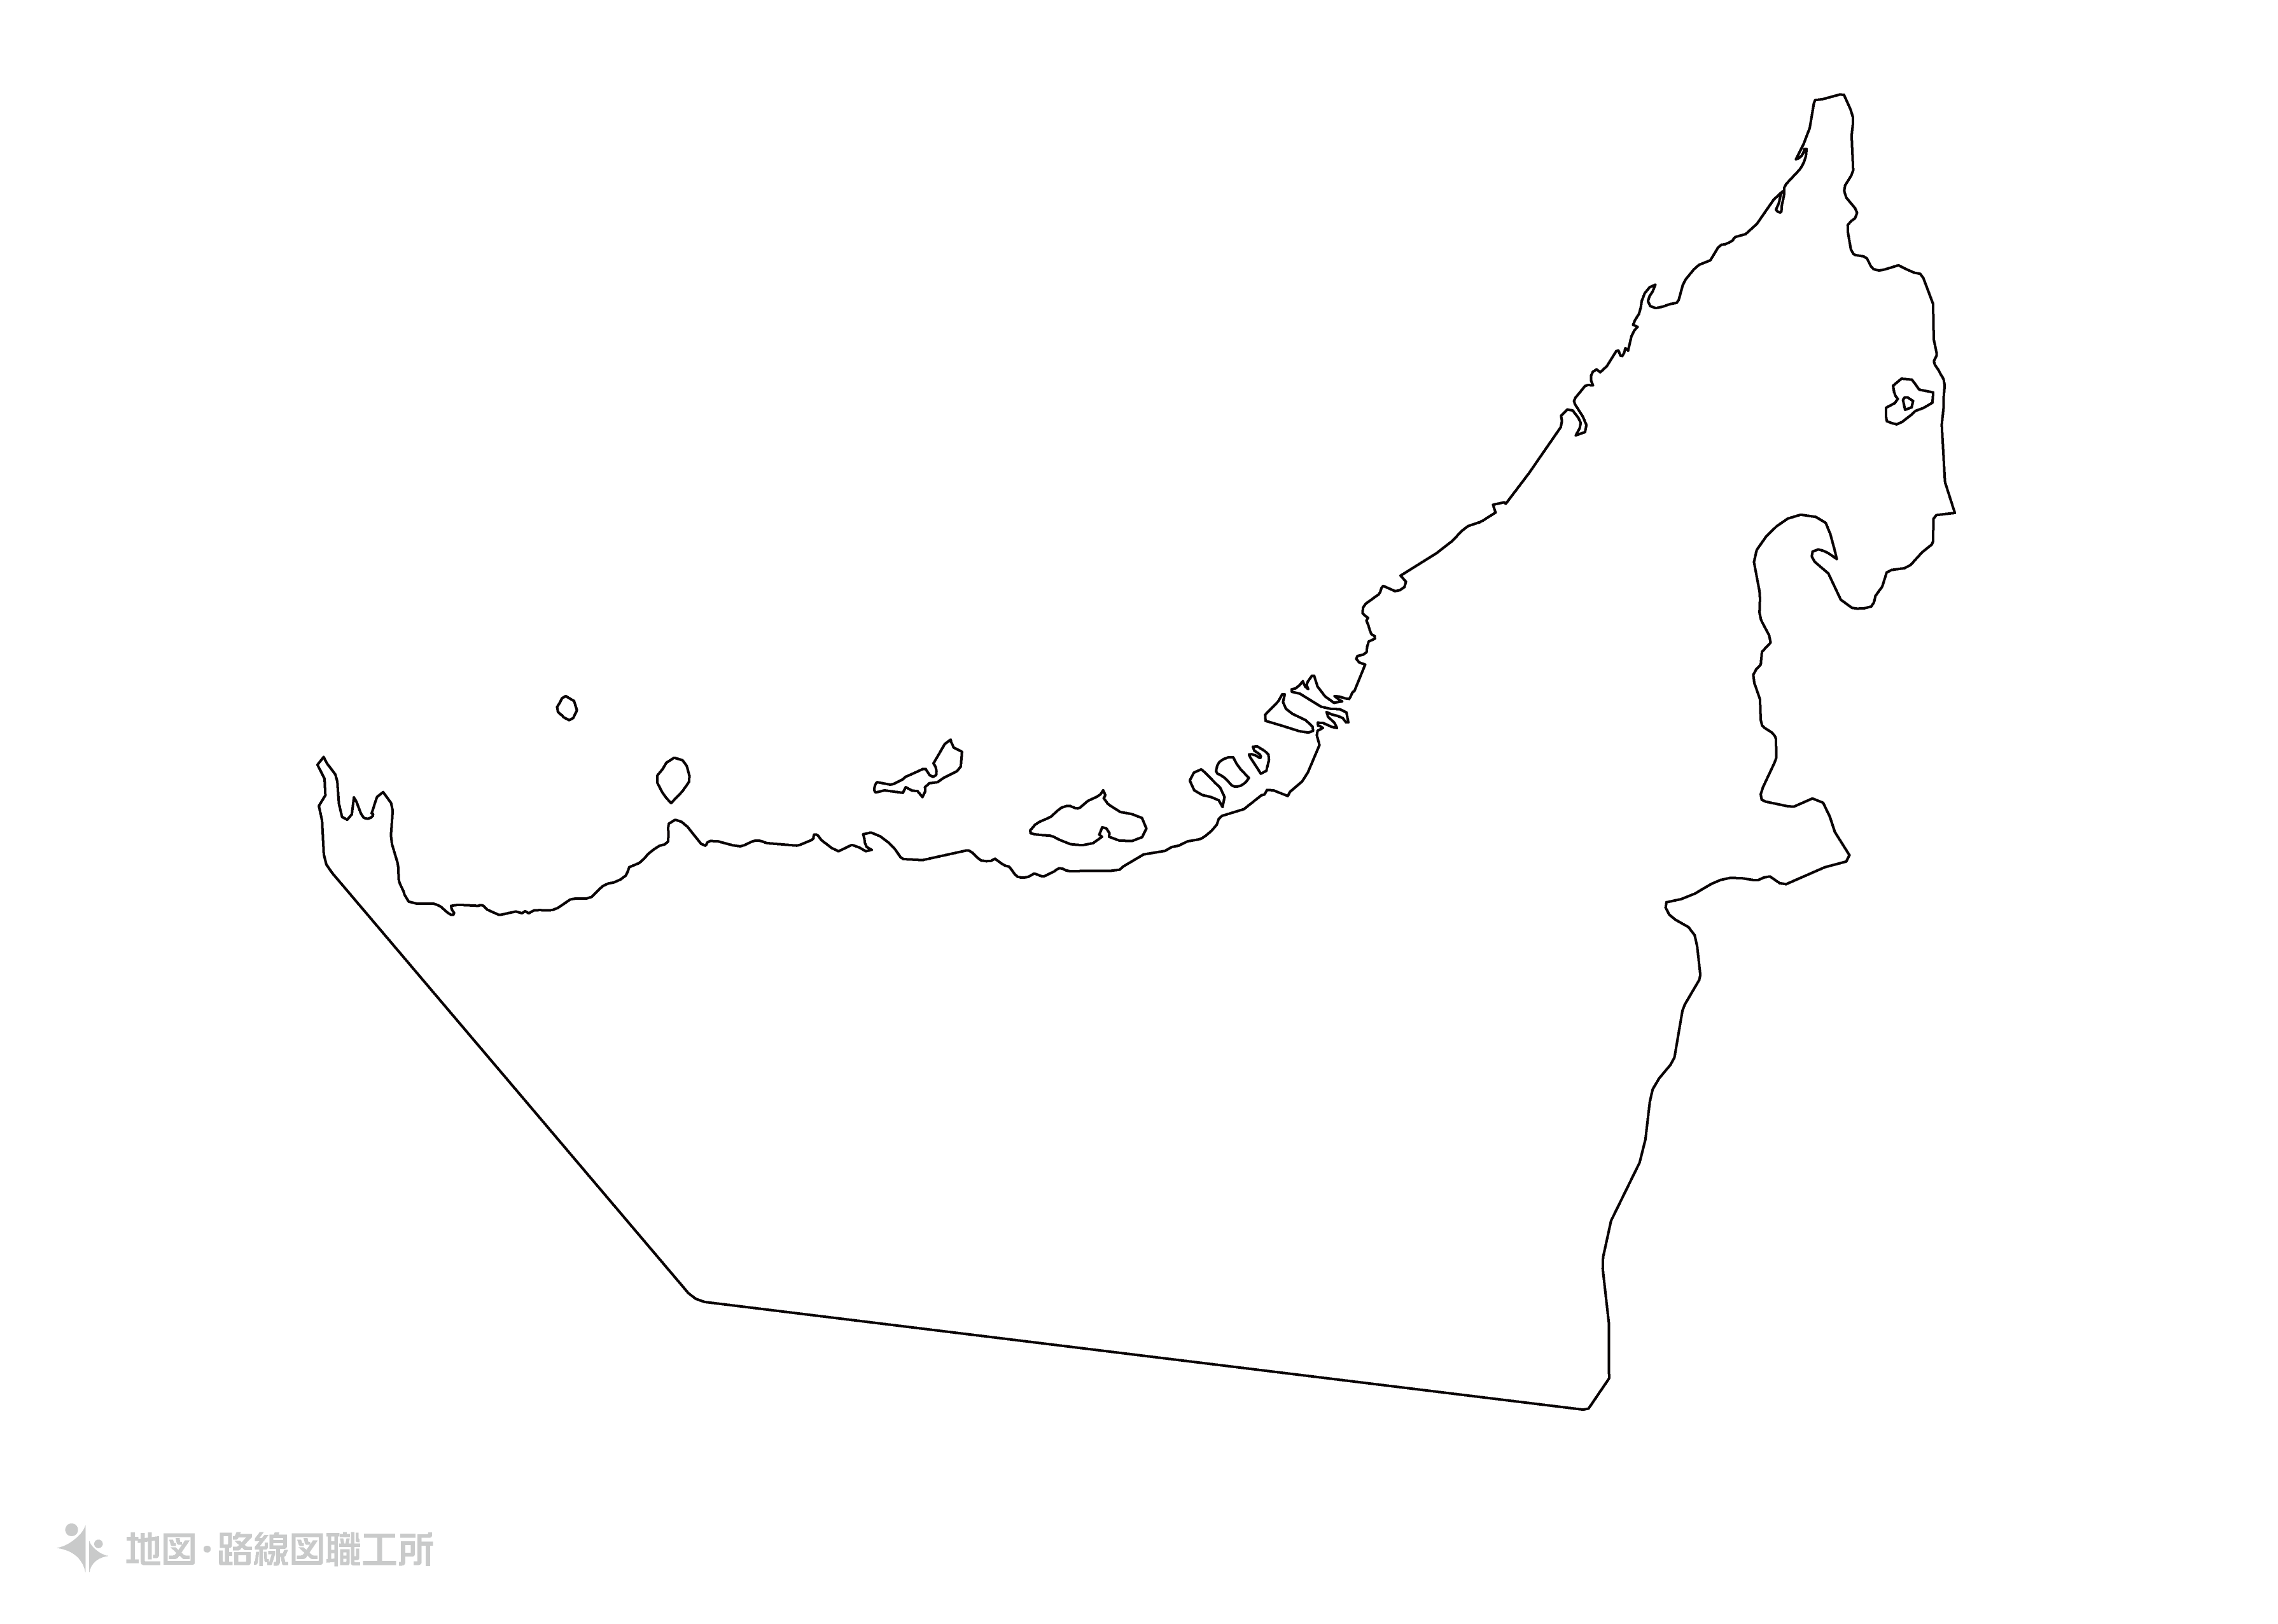 世界の白地図 アラブ首長国連邦 united-arab-emirates map